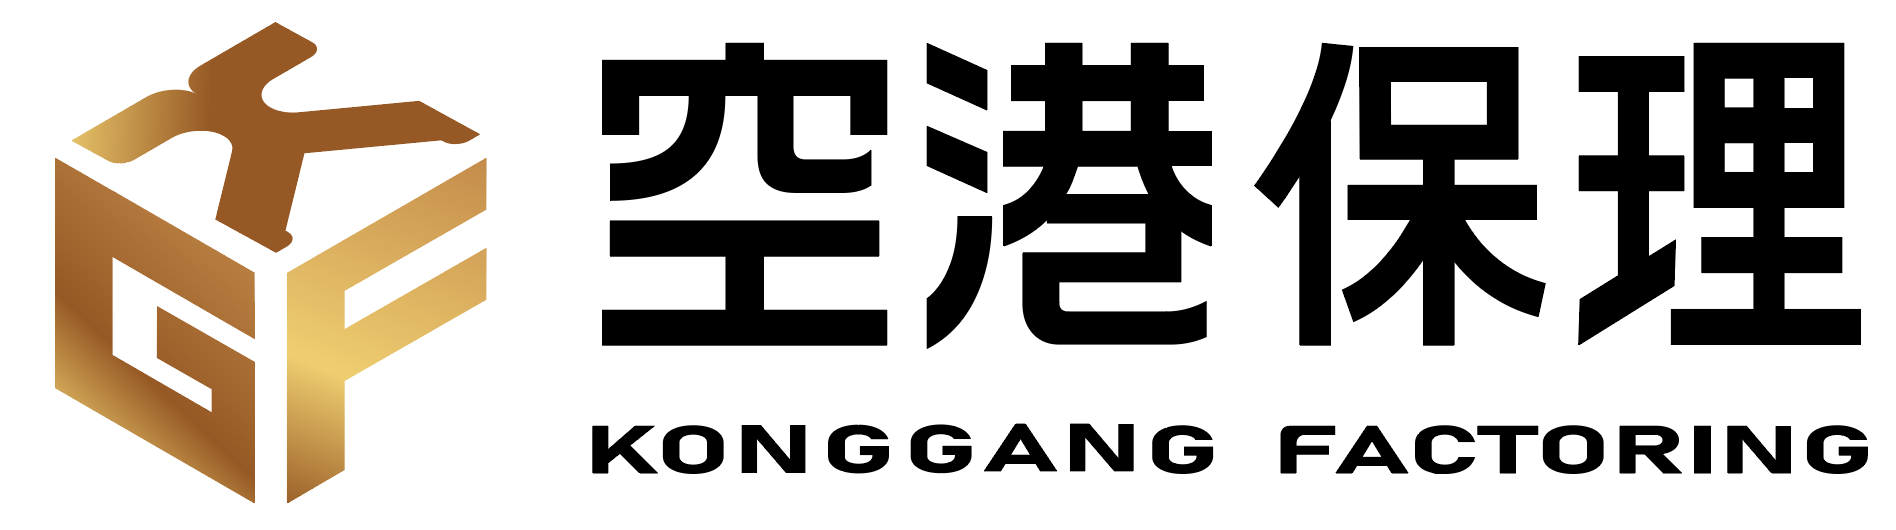 成都空港商业保理有限责任公司logo.png